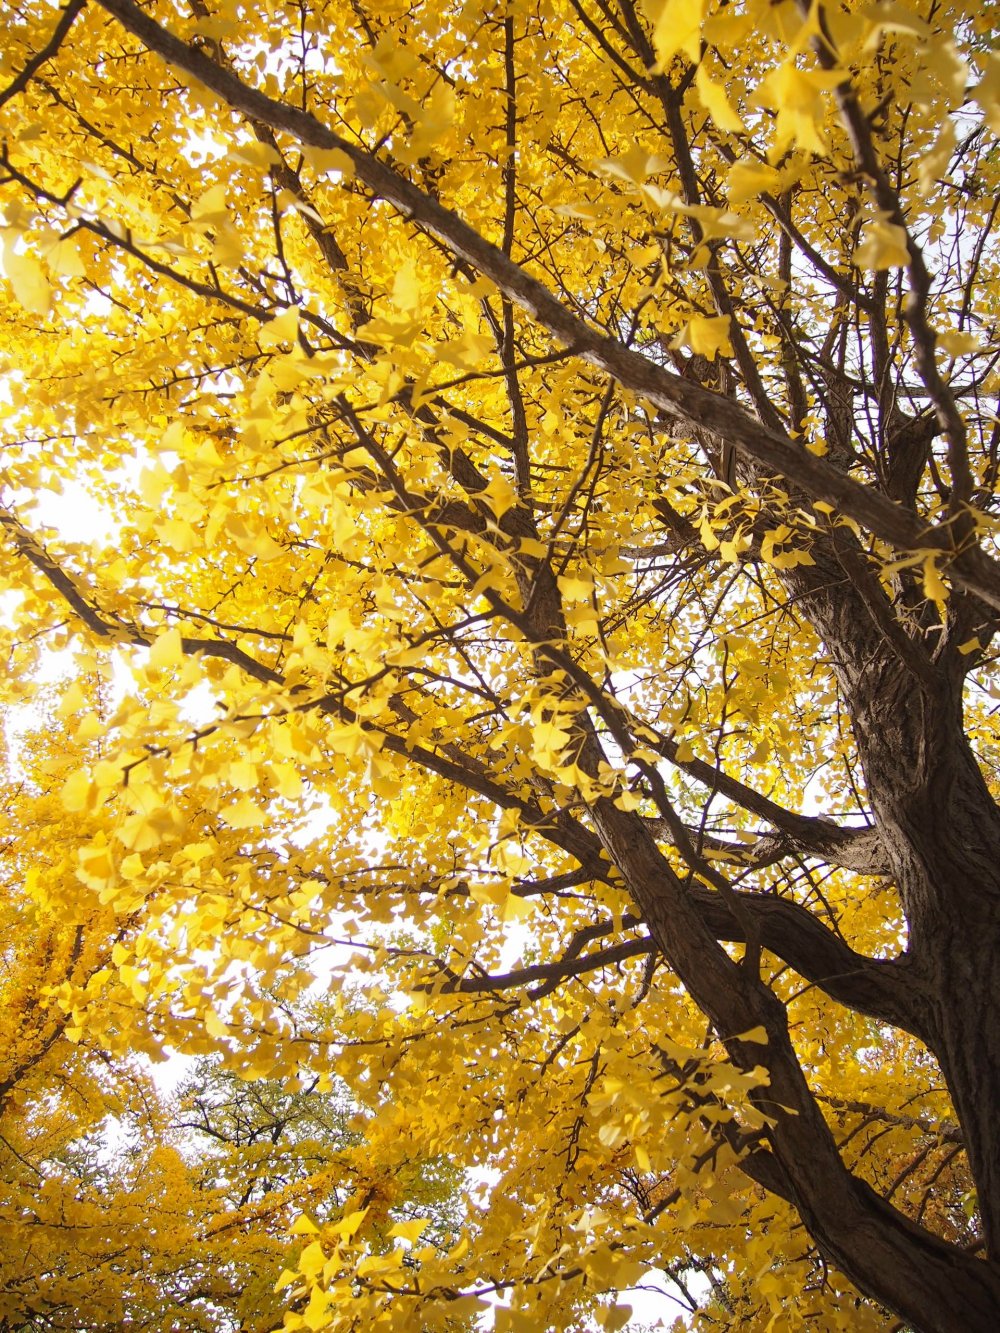 Sebuah tampilan cantik daun-daun emas.
